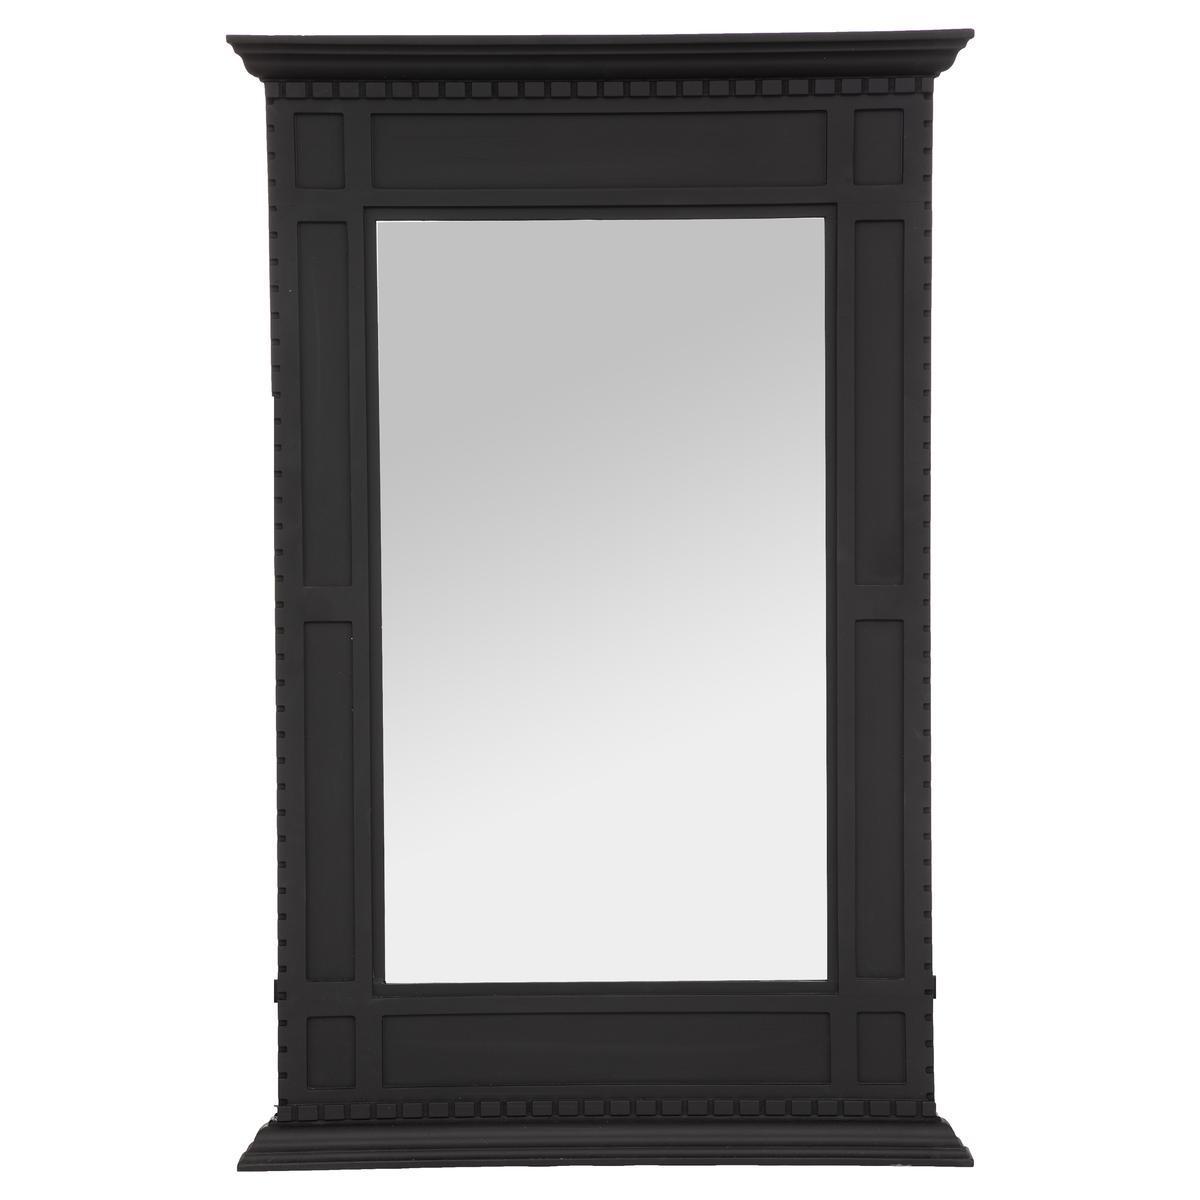 Miroir de cheminée - L 75 x H 115 cm - Noir - ATMOSPHERA